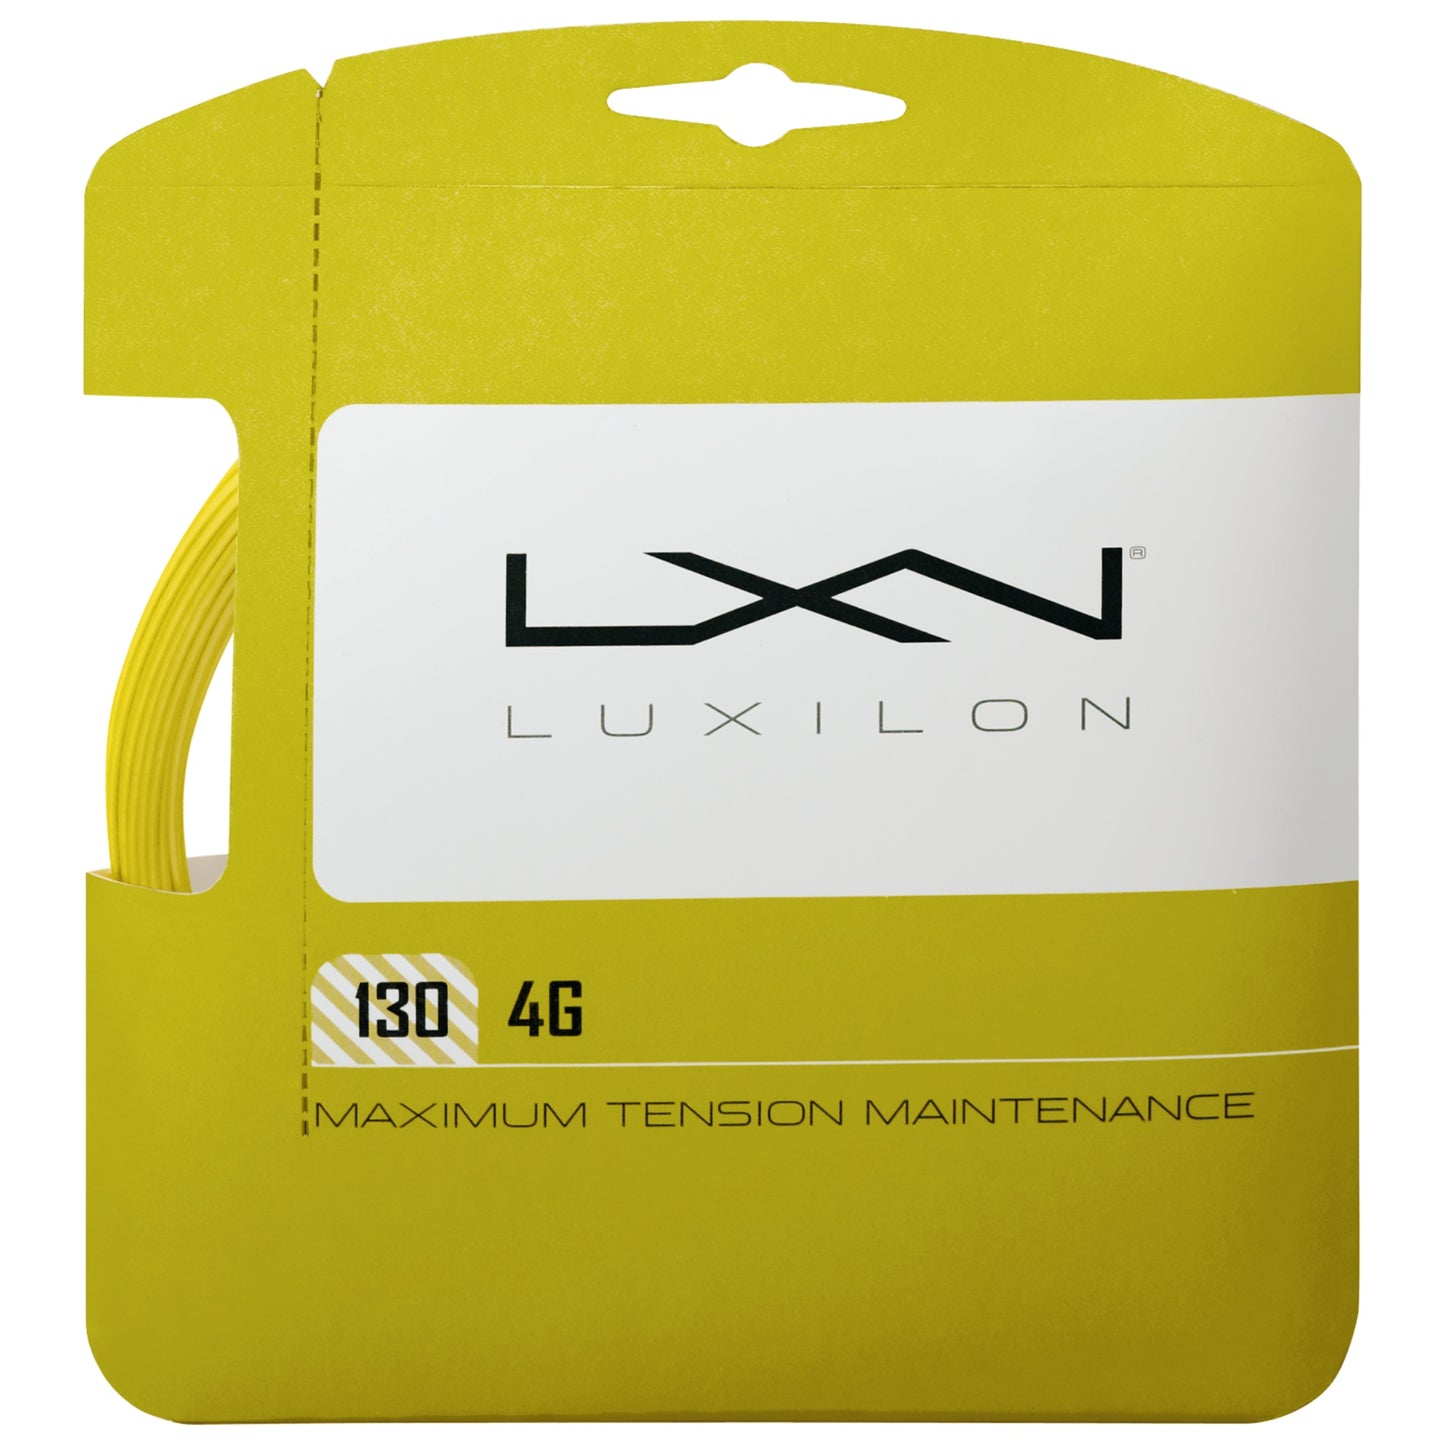 Luxilon 4G 12m/40ft